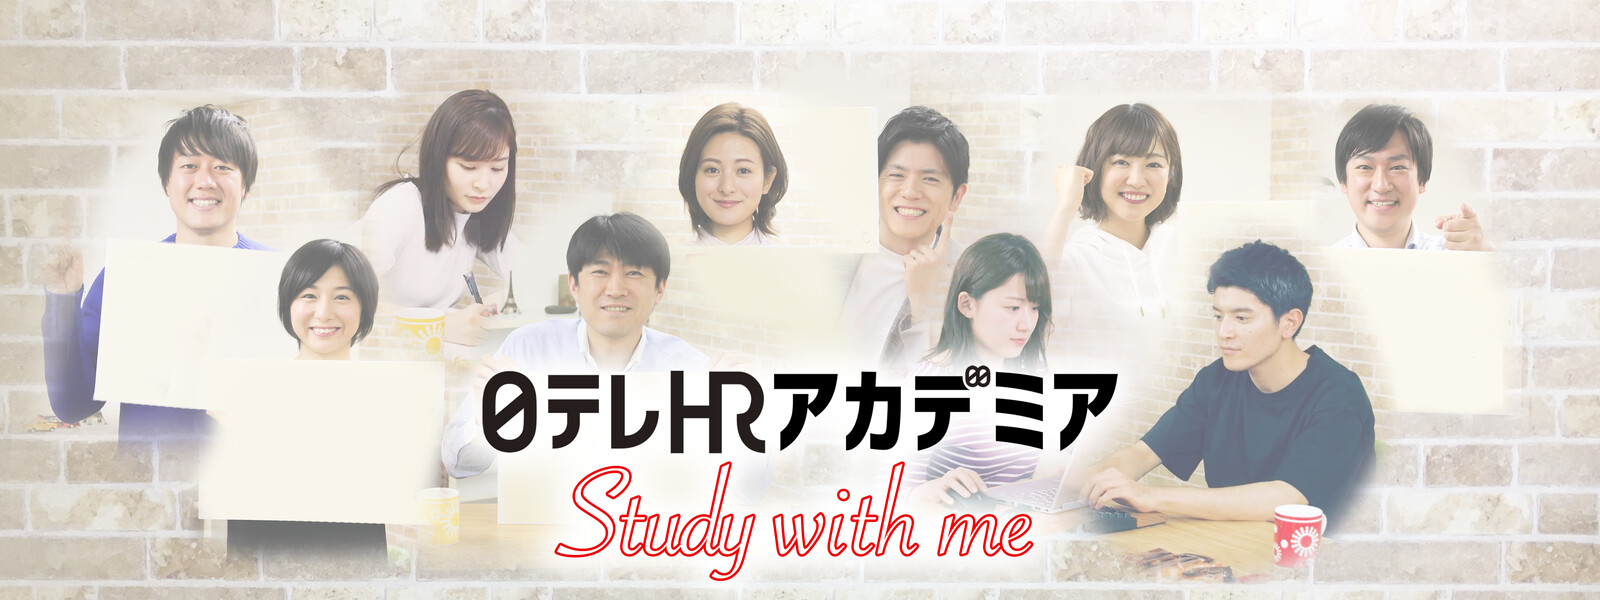 日テレHRアカデミア Study with me 動画